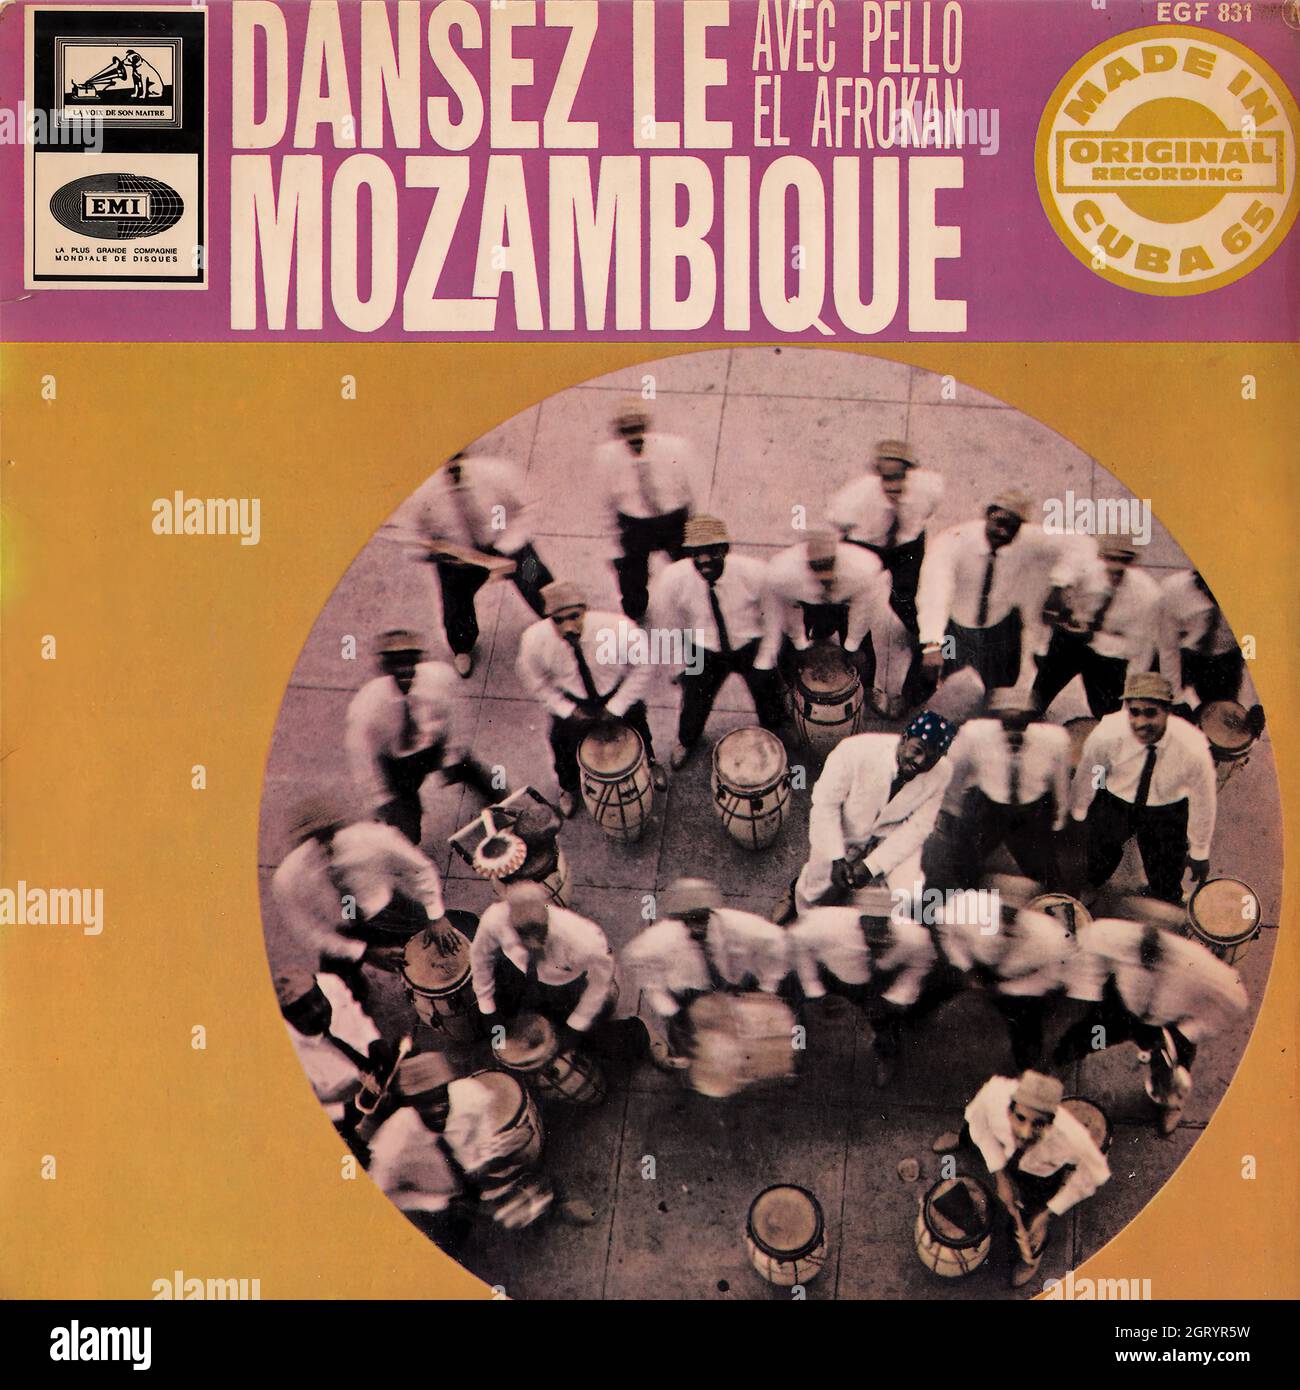 Pello El Afrokan - Dansez le Mozambique EP - Vintage Vinyl Record Cover Stock Photo